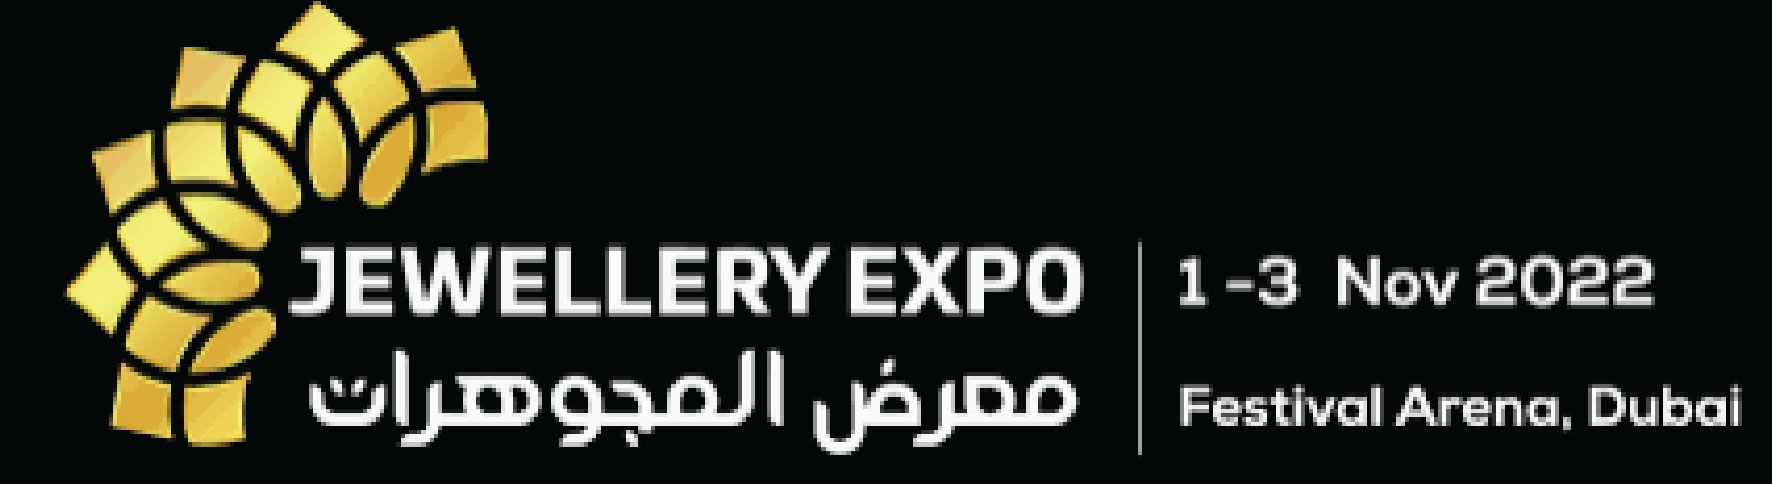 Premium Jewellery Expo Dubai